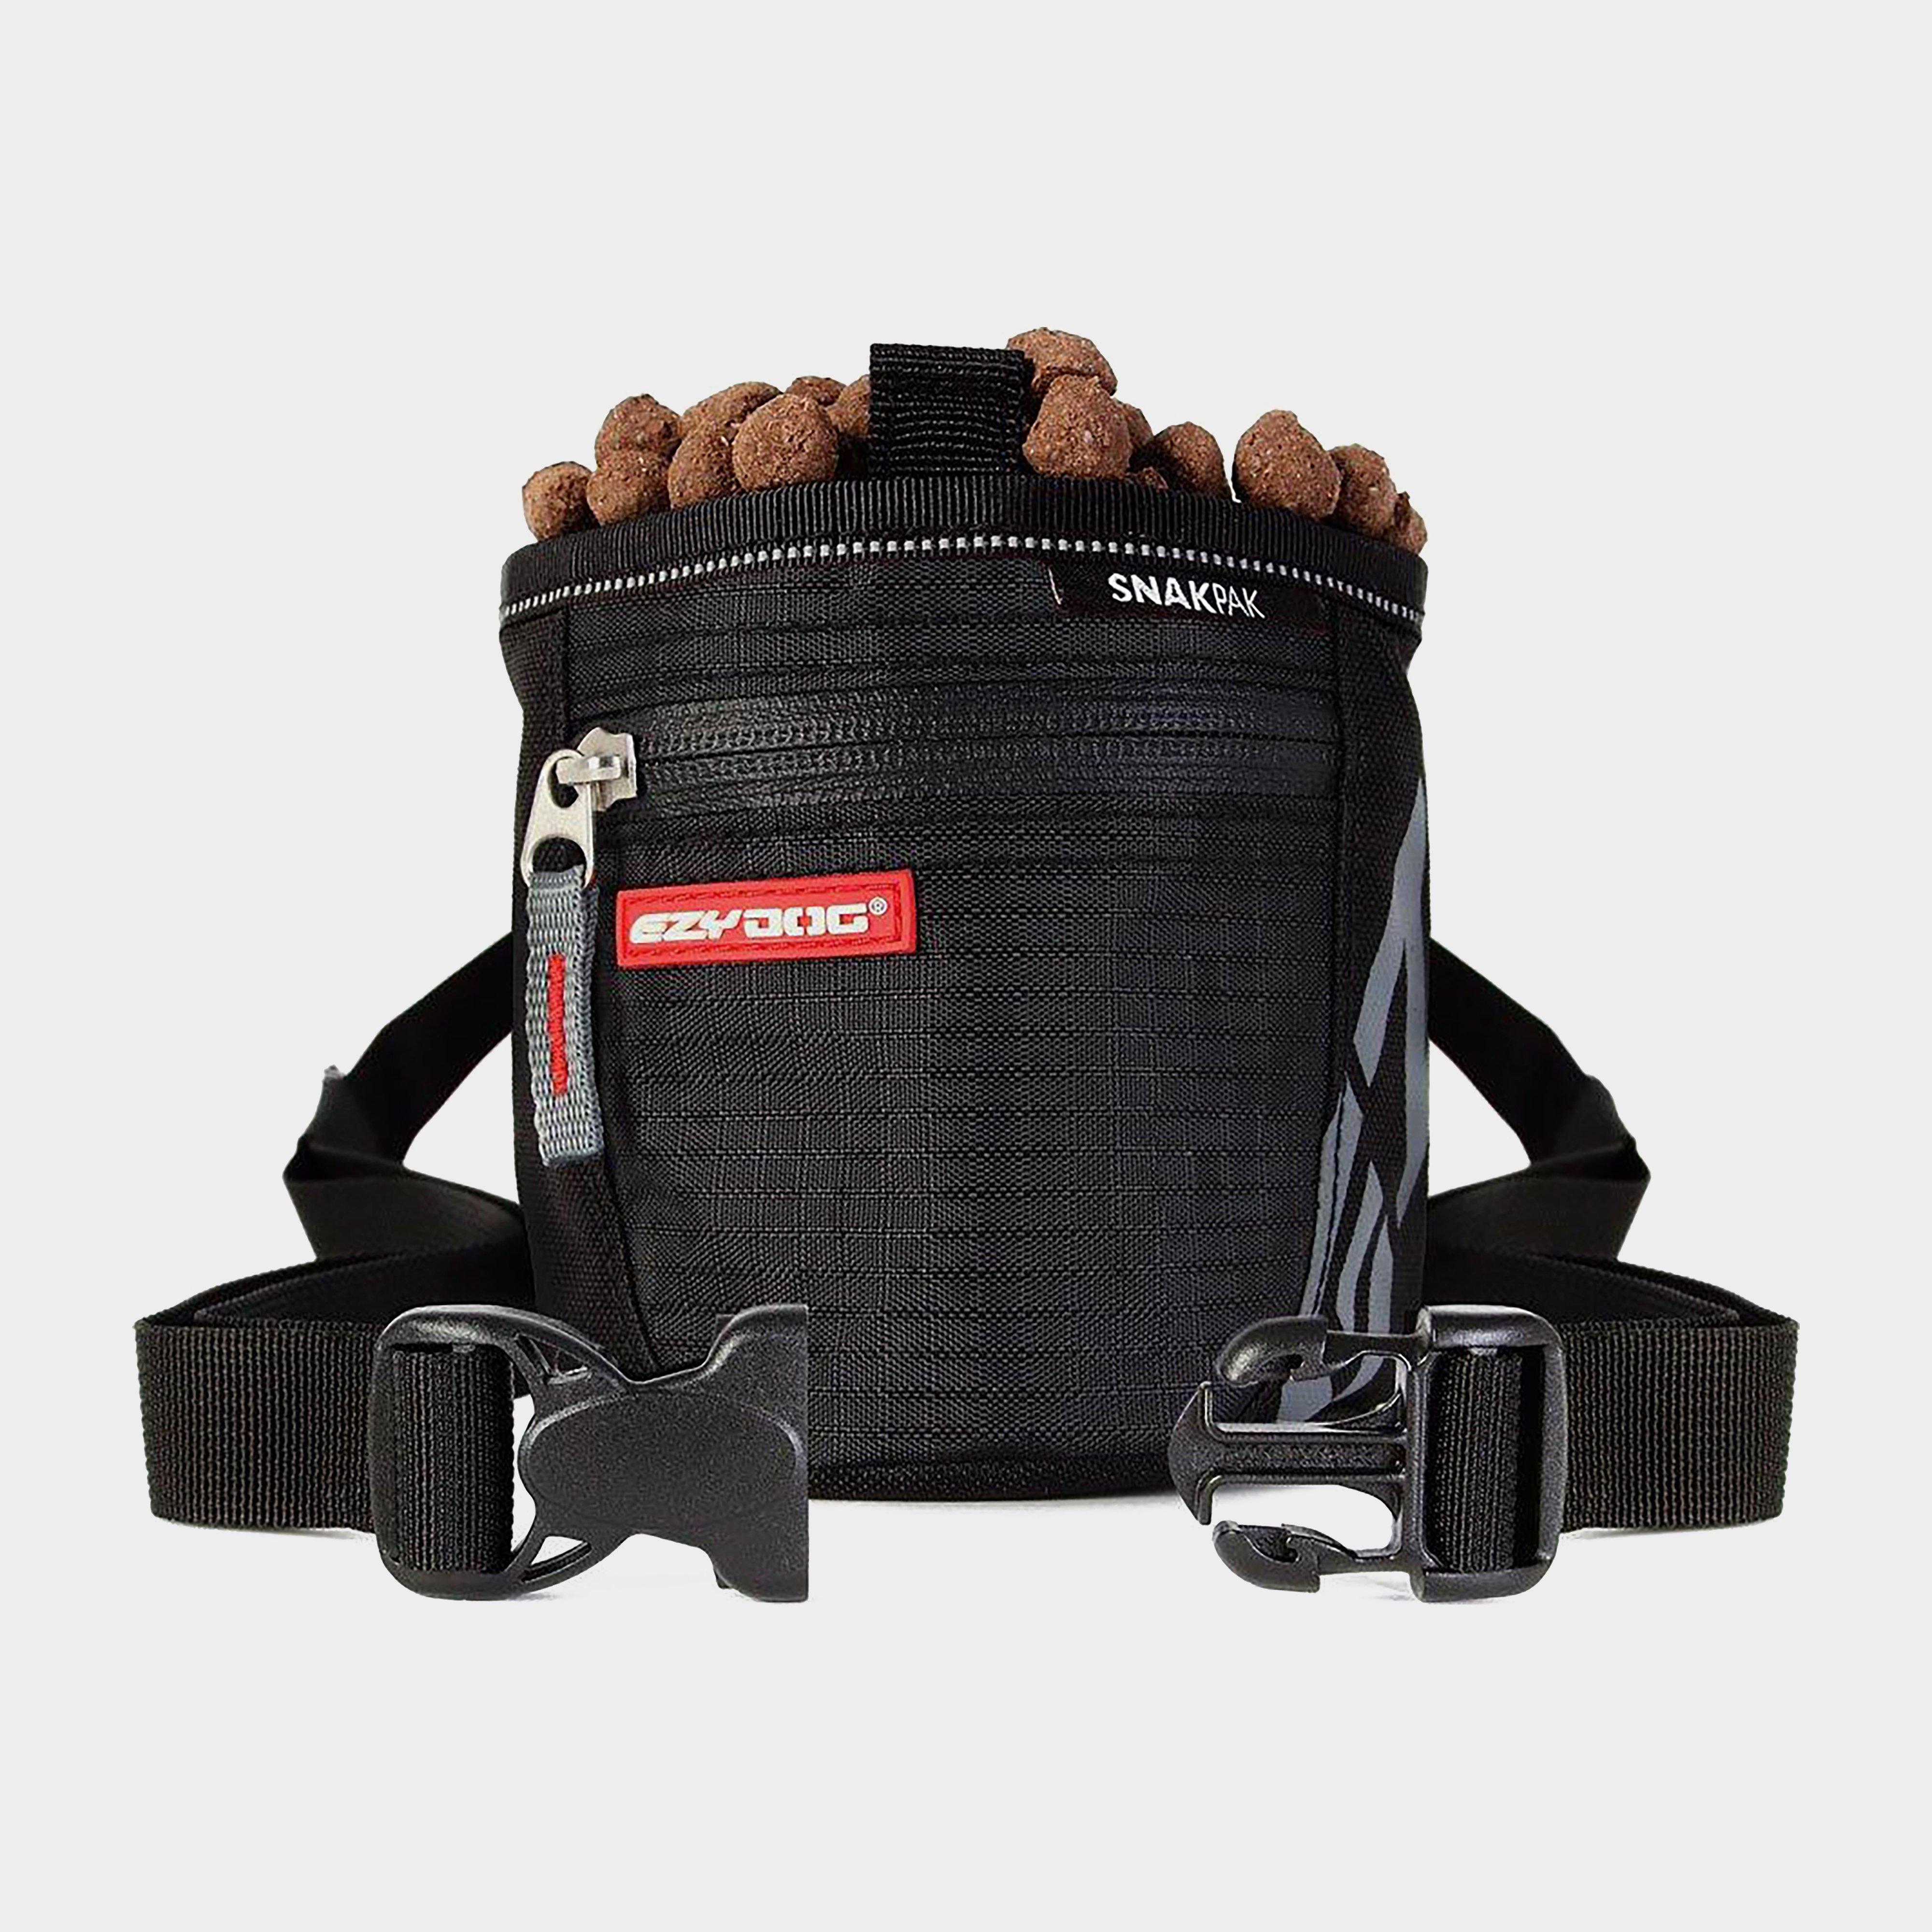 Ezy-dog Snakpak Dog Treat Bag - Black/bag  Black/bag